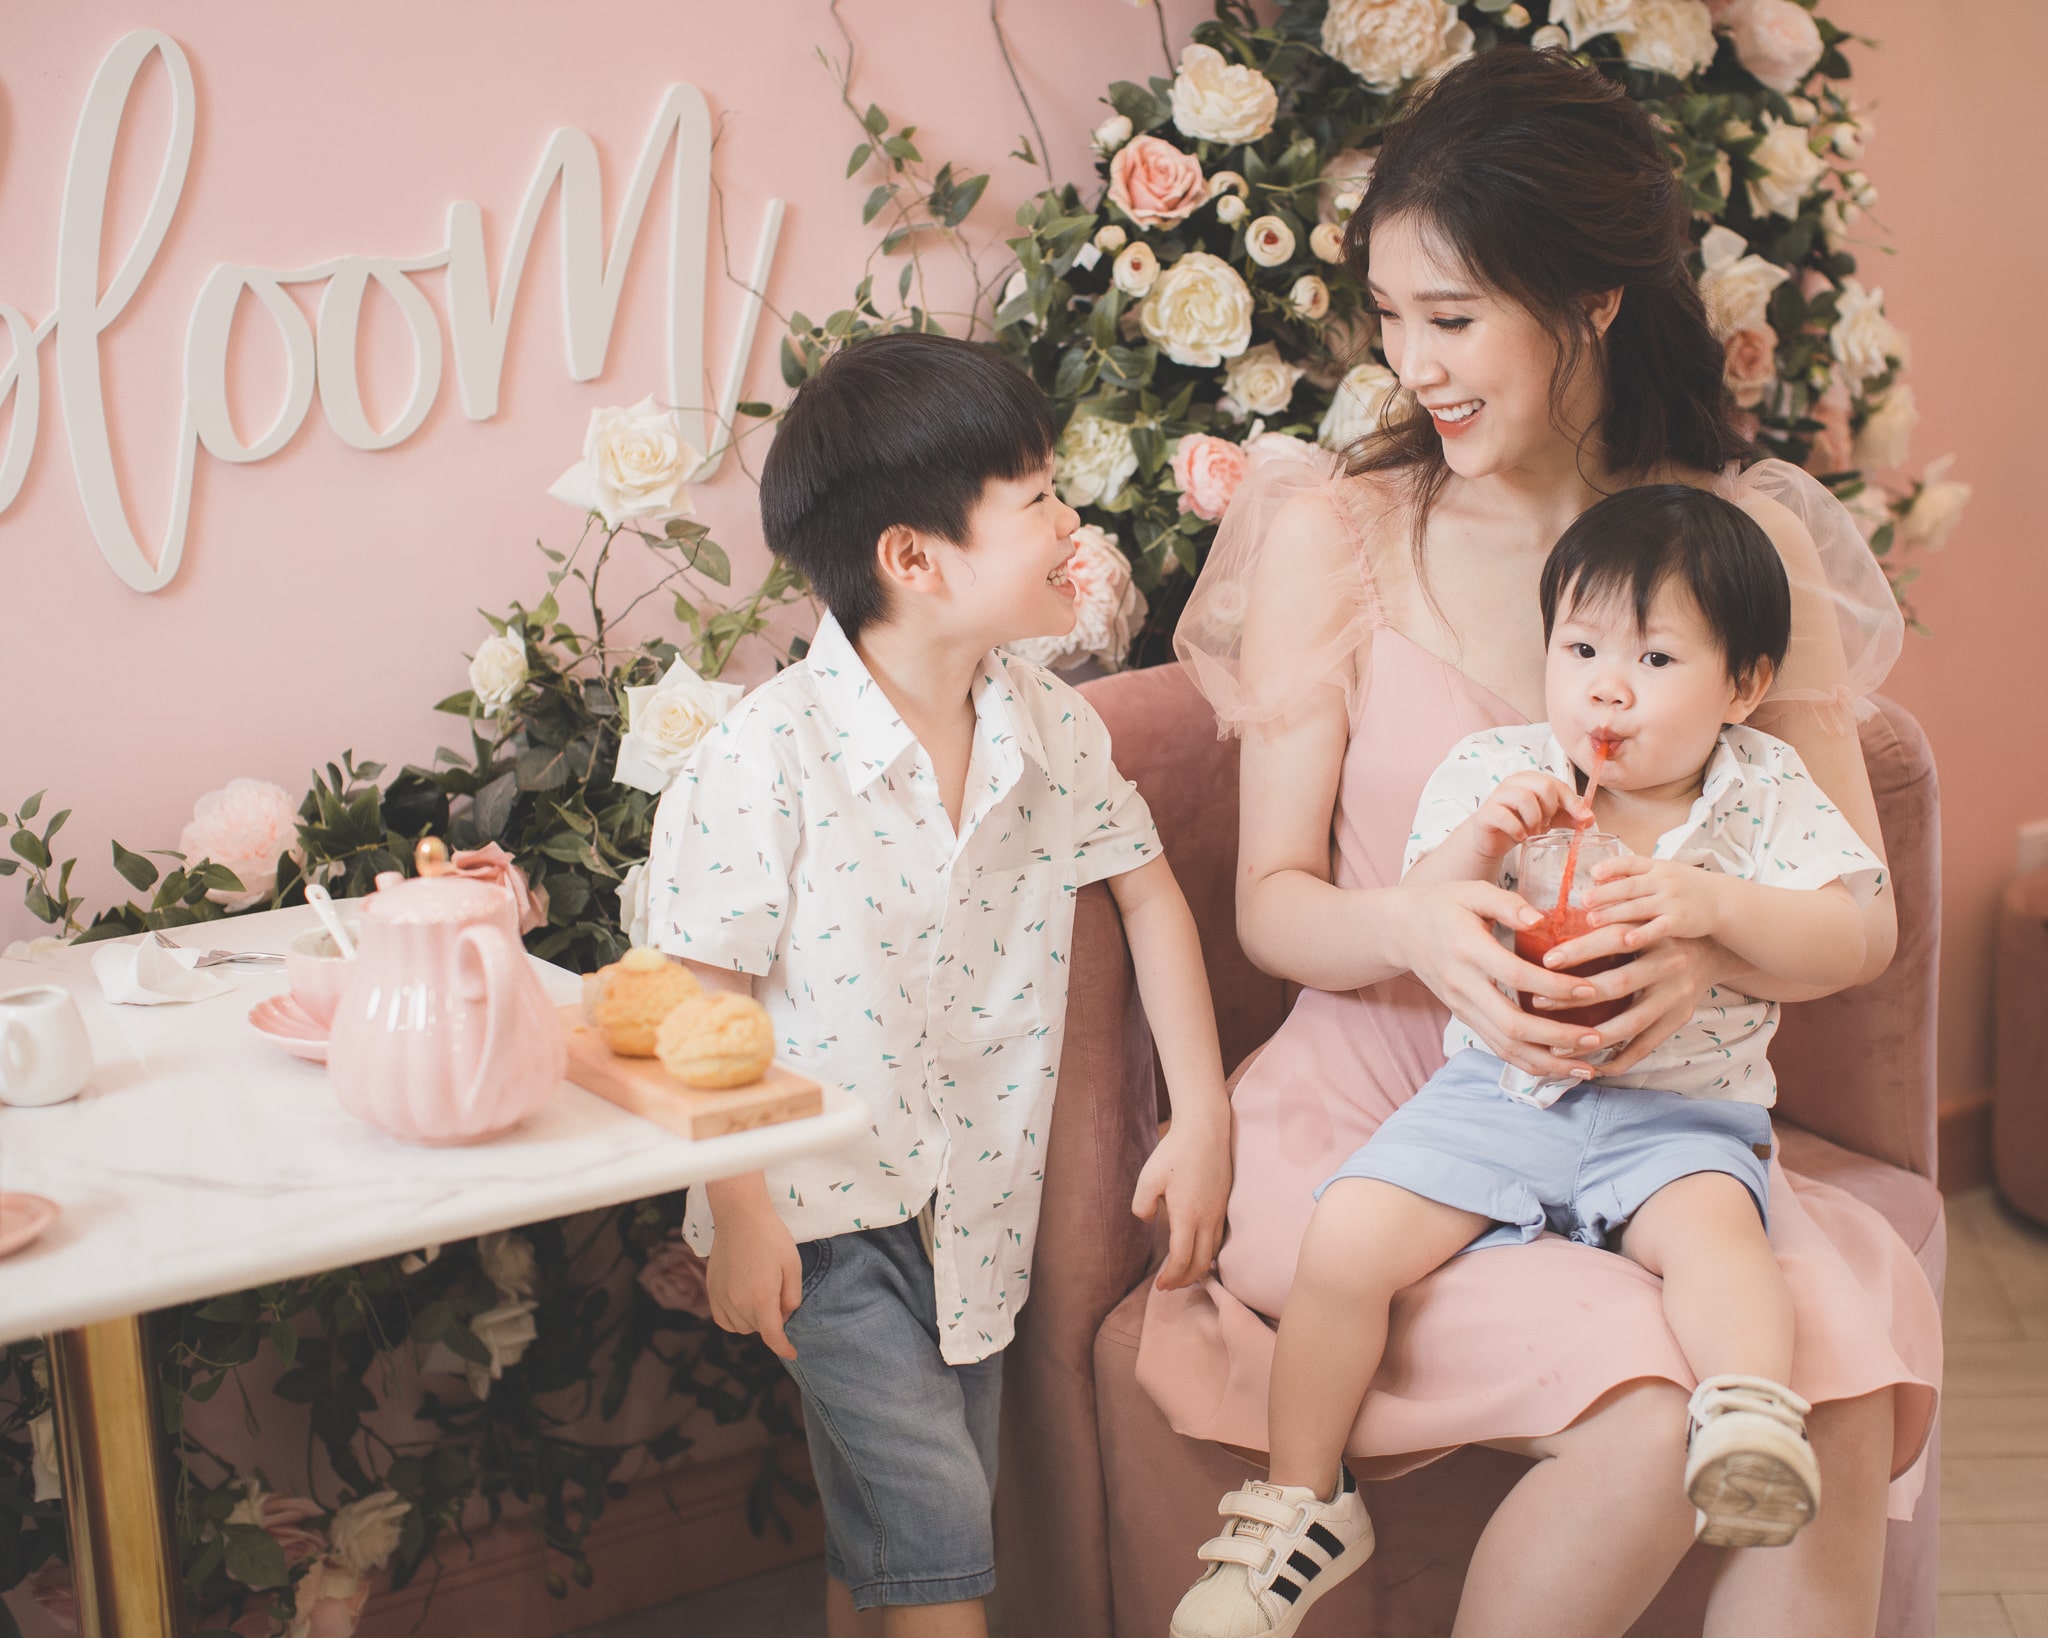 Trong gia đình, Phí Thùy Linh có nhiều thời gian bên các con hơn bởi chồng cô - doanh nhân Mạnh Cường rất bận rộn với công việc kinh doanh. Tuy vậy, cả Bean và Bun đều rất 